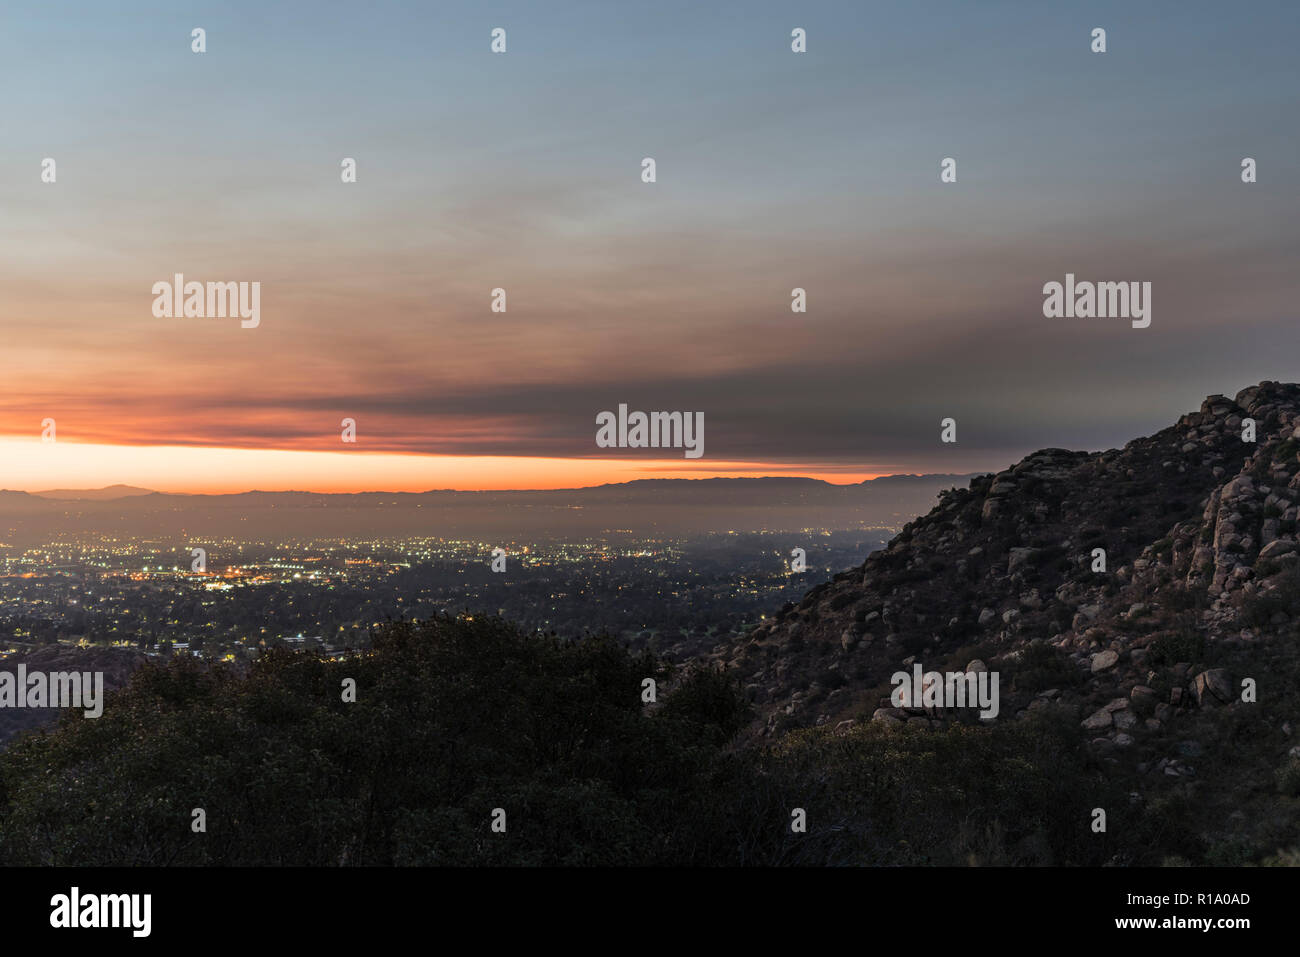 Los Angeles, Kalifornien, USA - 10. November 2018: Rauch am Himmel über dem San Fernando Valley. Rauch aus der Woolsey Brand in Malibu und Ventura County. Credit: trekandshoot/Alamy leben Nachrichten Stockfoto